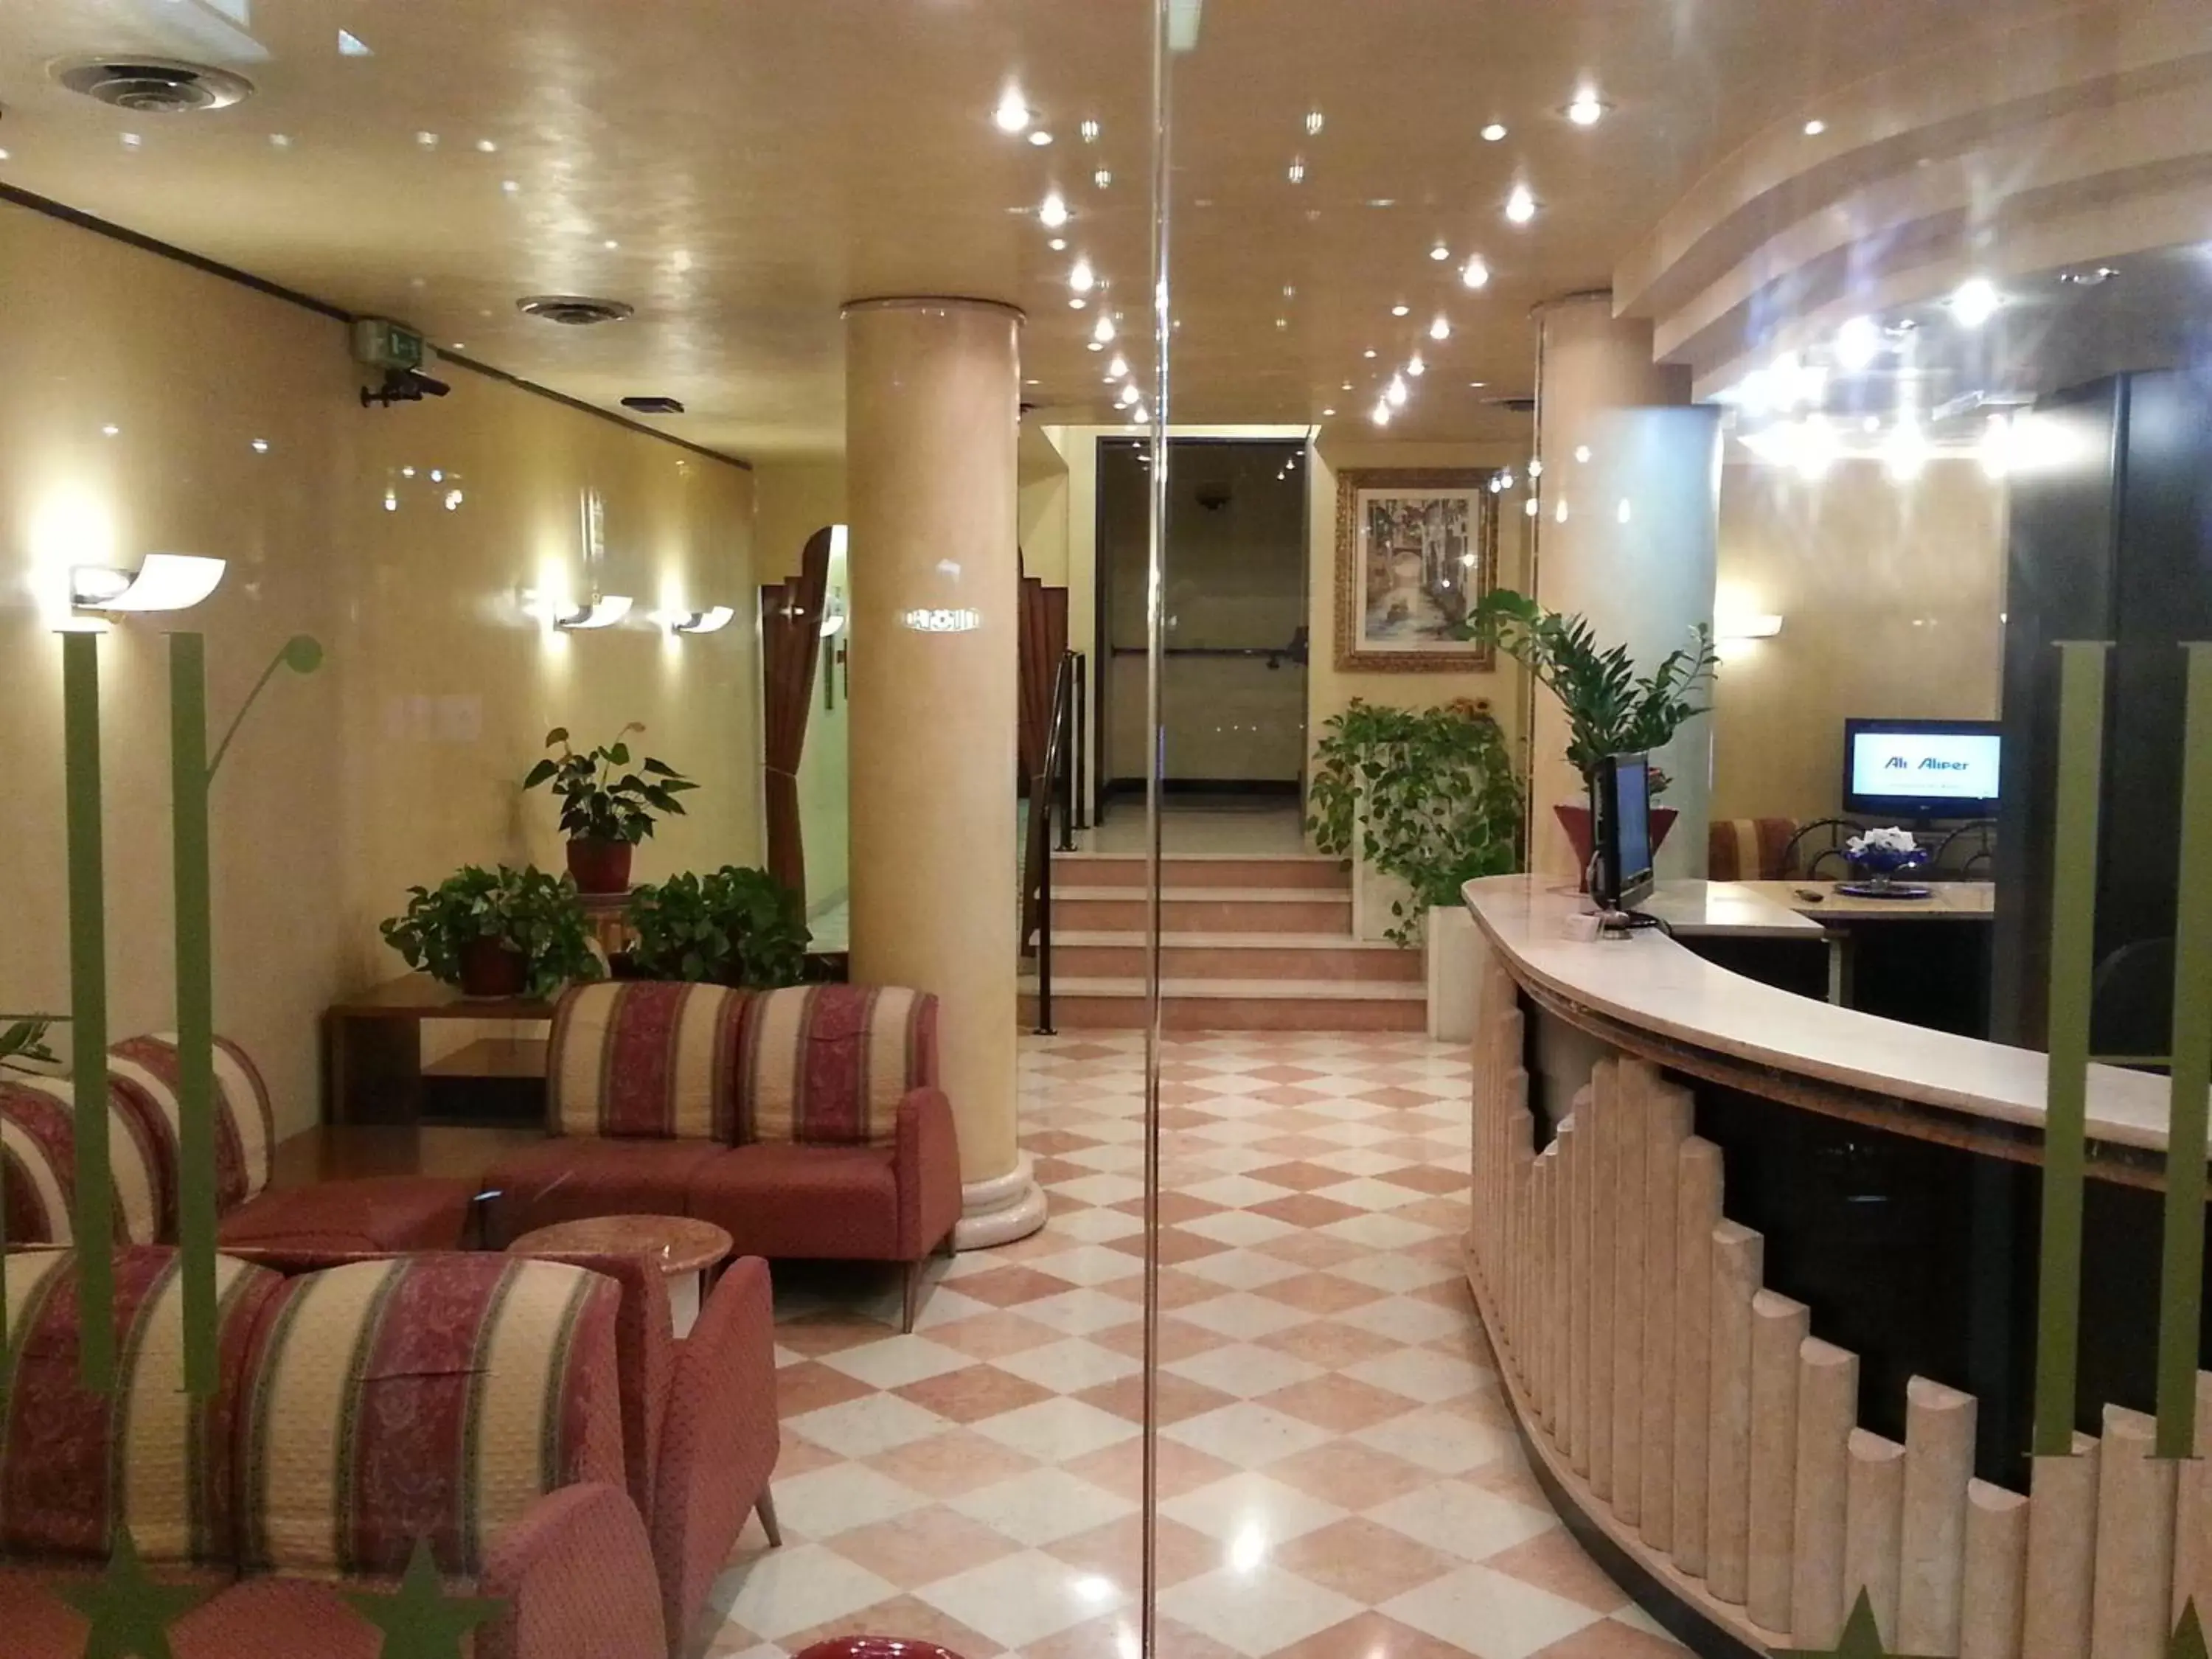 Lobby or reception, Lobby/Reception in Hotel Raffaello